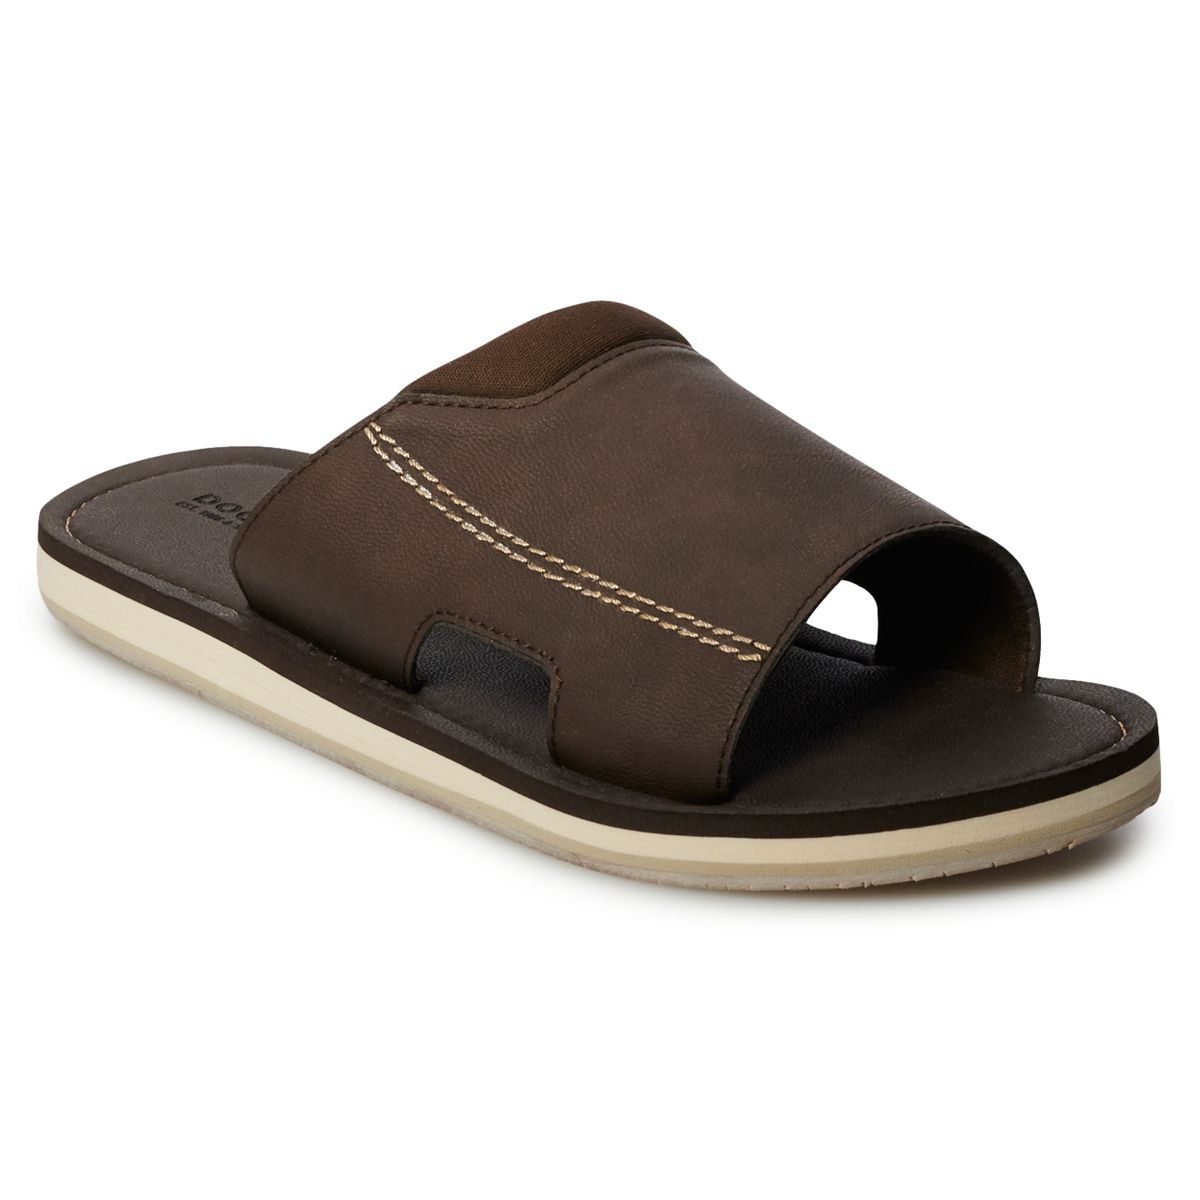 Men's Slide Sandals or Flip Flops (Dockers, Chaps & More)